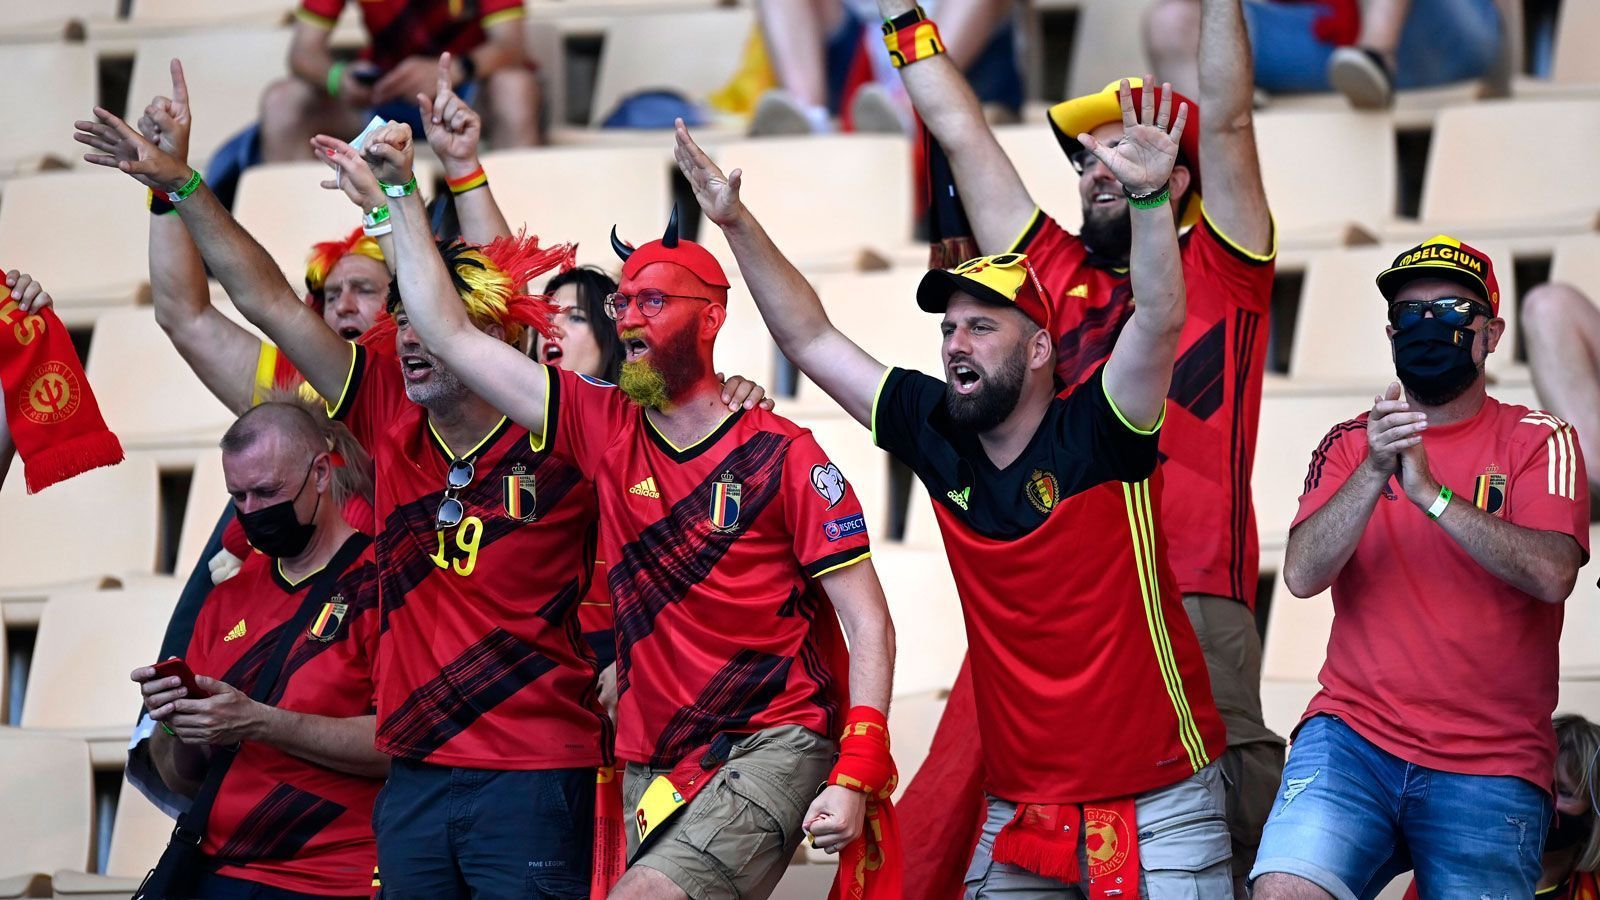 
                <strong>Die Stimmung passt</strong><br>
                Gute Laune haben die belgischen Fans definitiv mitgebracht - jetzt müssen die Spieler auf dem Rasen nur noch so performen wie ihre Anhänger auf den Rängen.
              